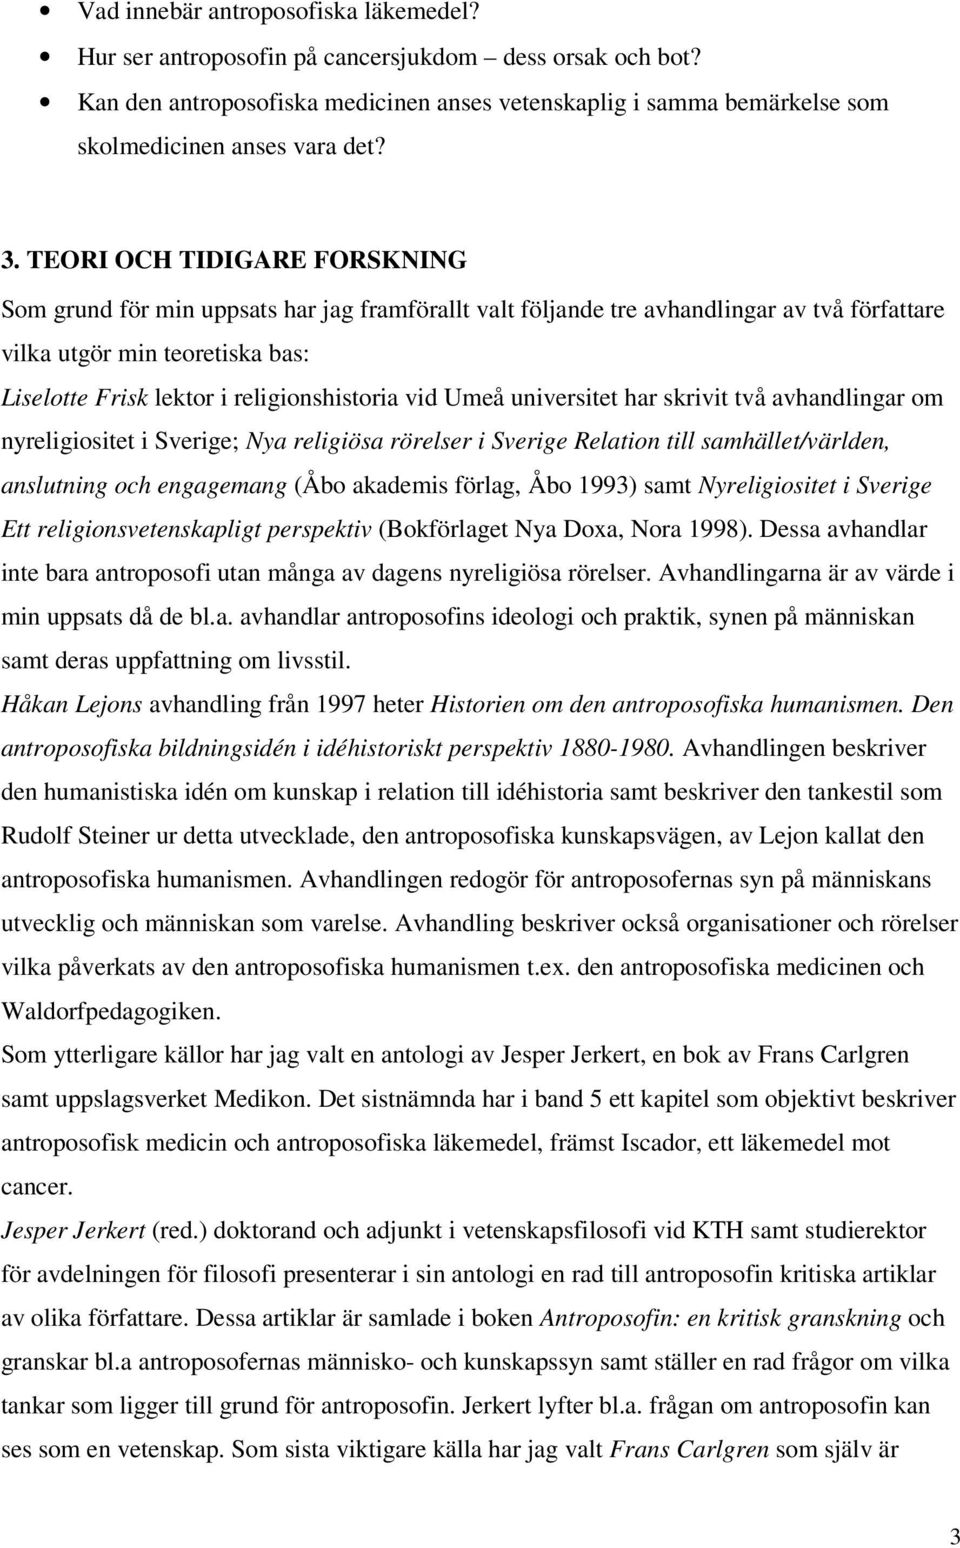 religionshistoria vid Umeå universitet har skrivit två avhandlingar om nyreligiositet i Sverige; Nya religiösa rörelser i Sverige Relation till samhället/världen, anslutning och engagemang (Åbo